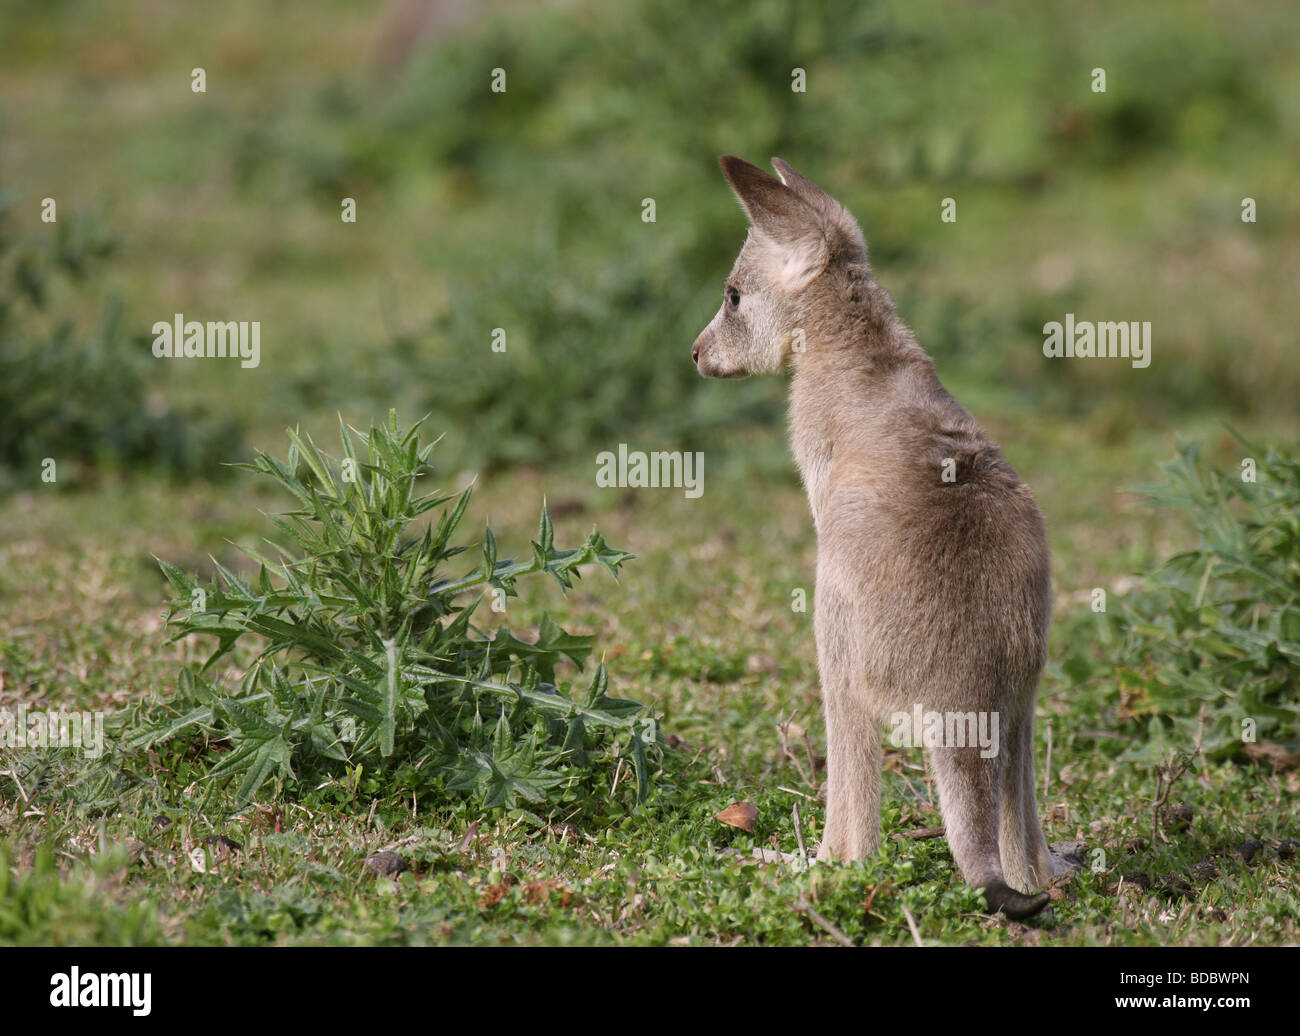 Eastern grey kangaroo joey Stock Photo